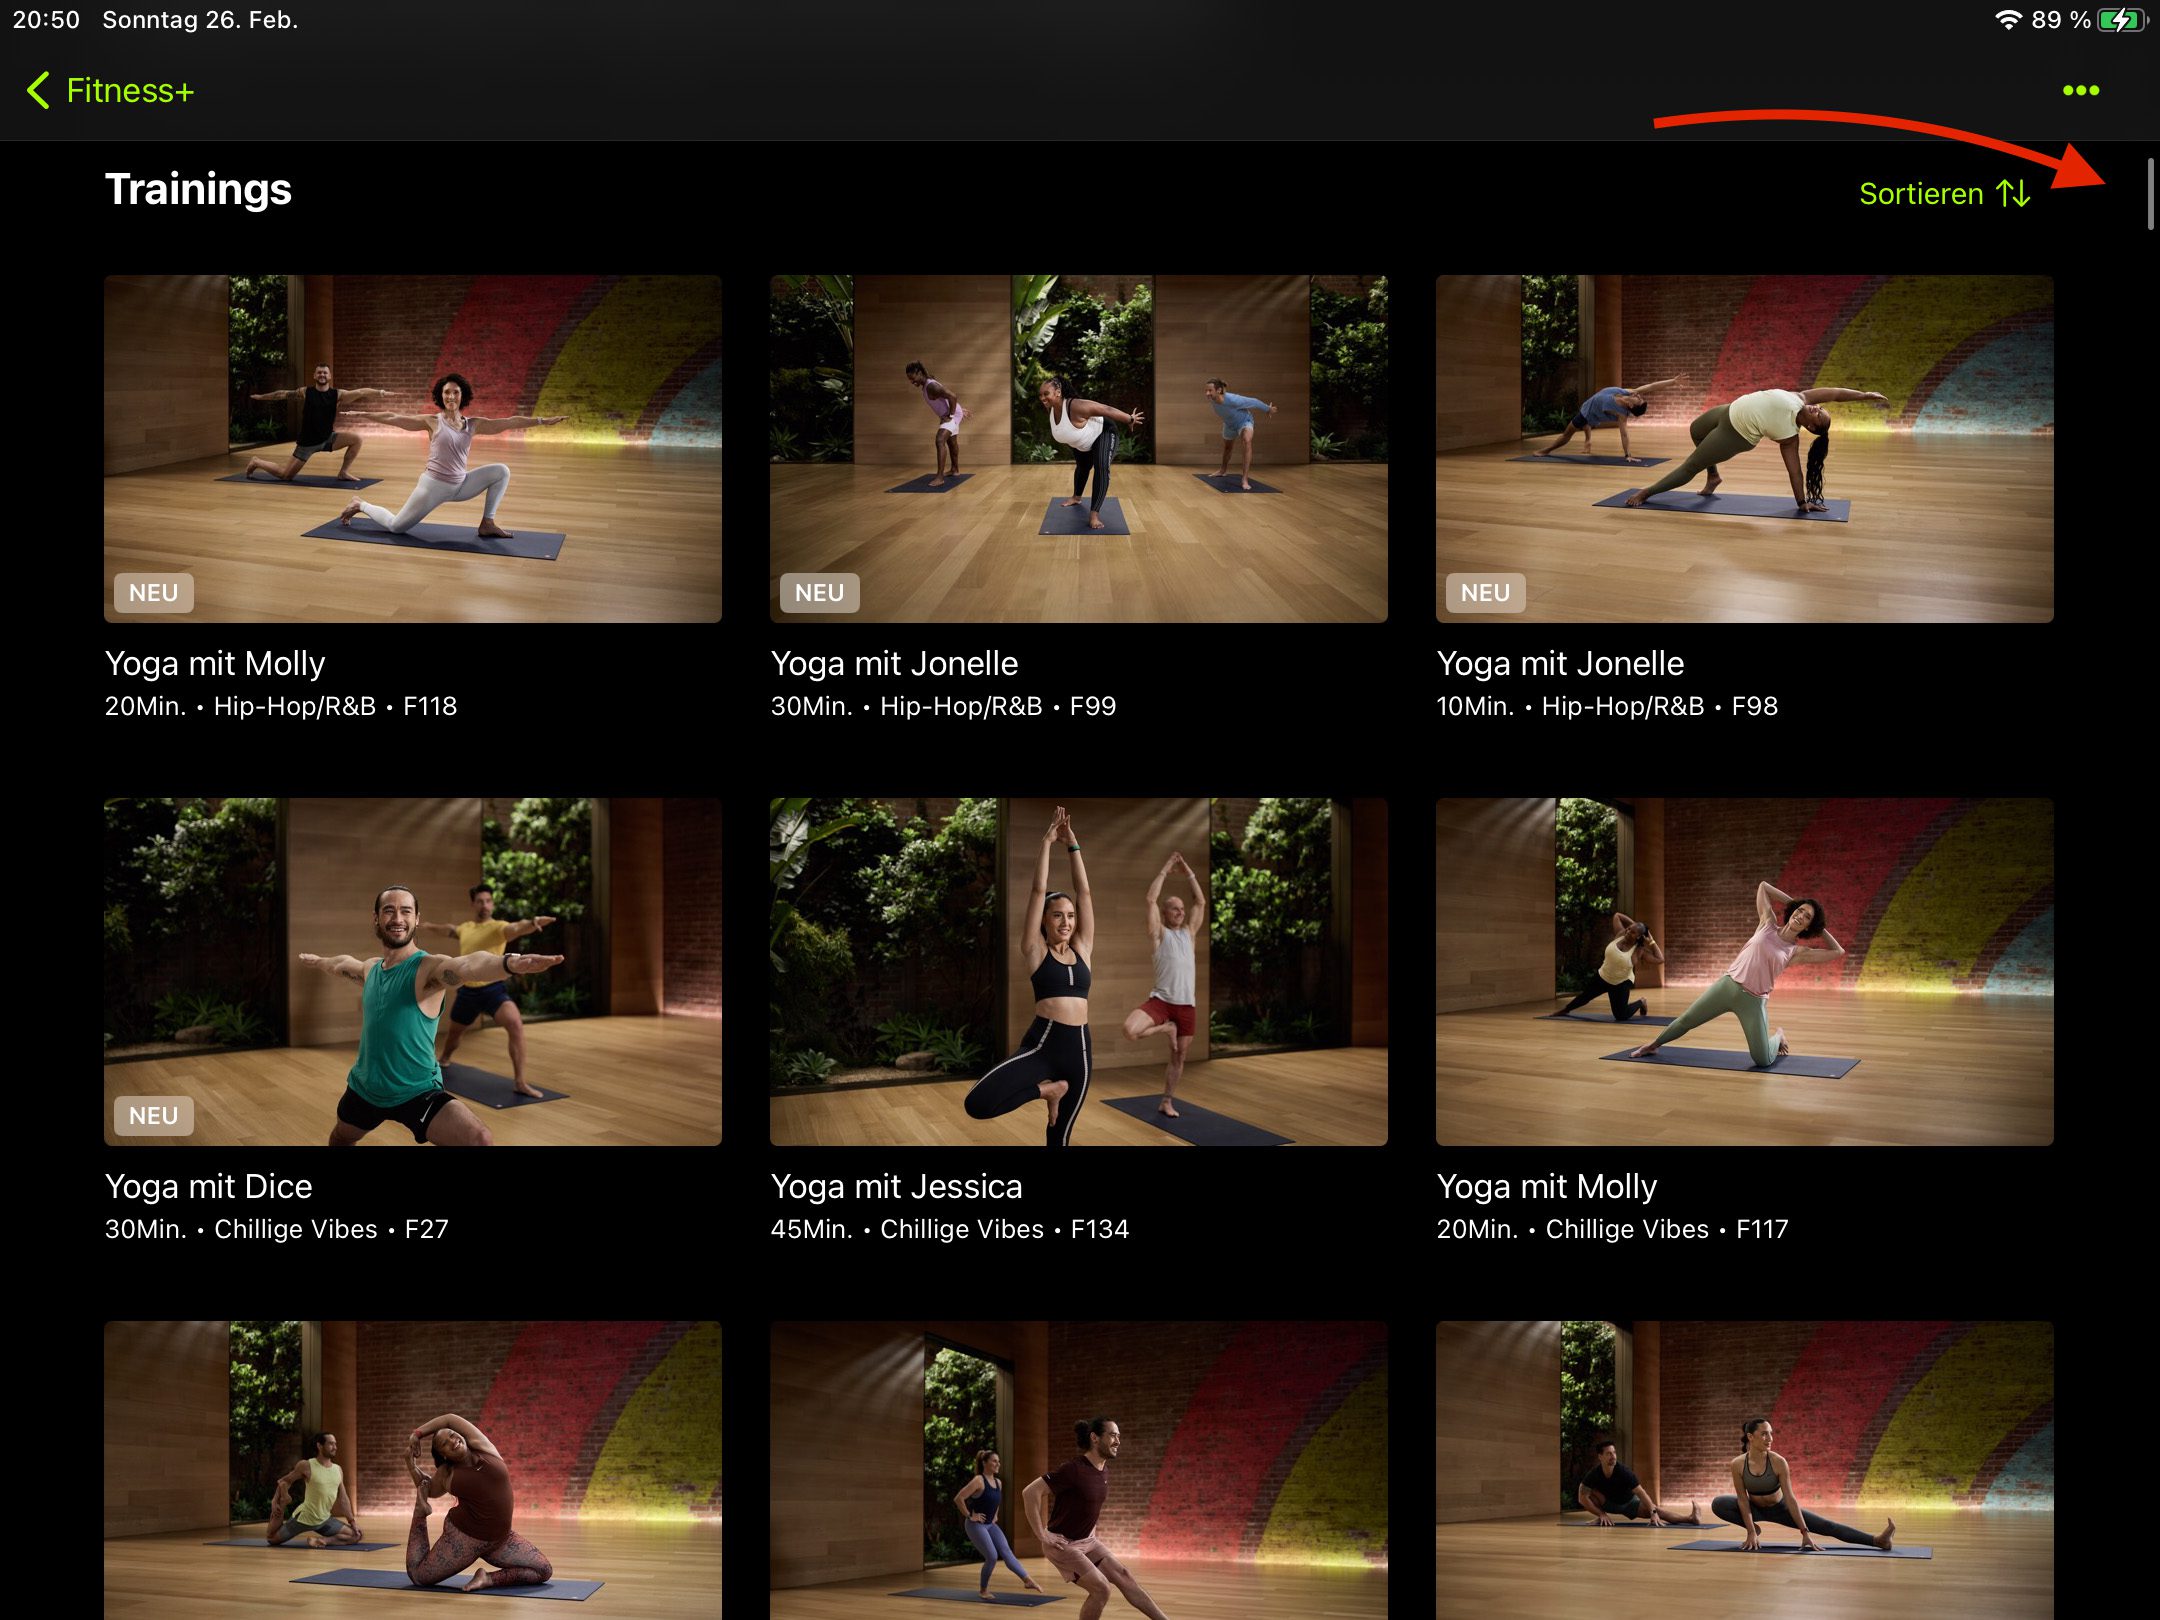 Hier sieht man nur die Yoga-Videos. Anhand des Scrollbalkens kann man erahnen, wie viele Videos man hier findet.